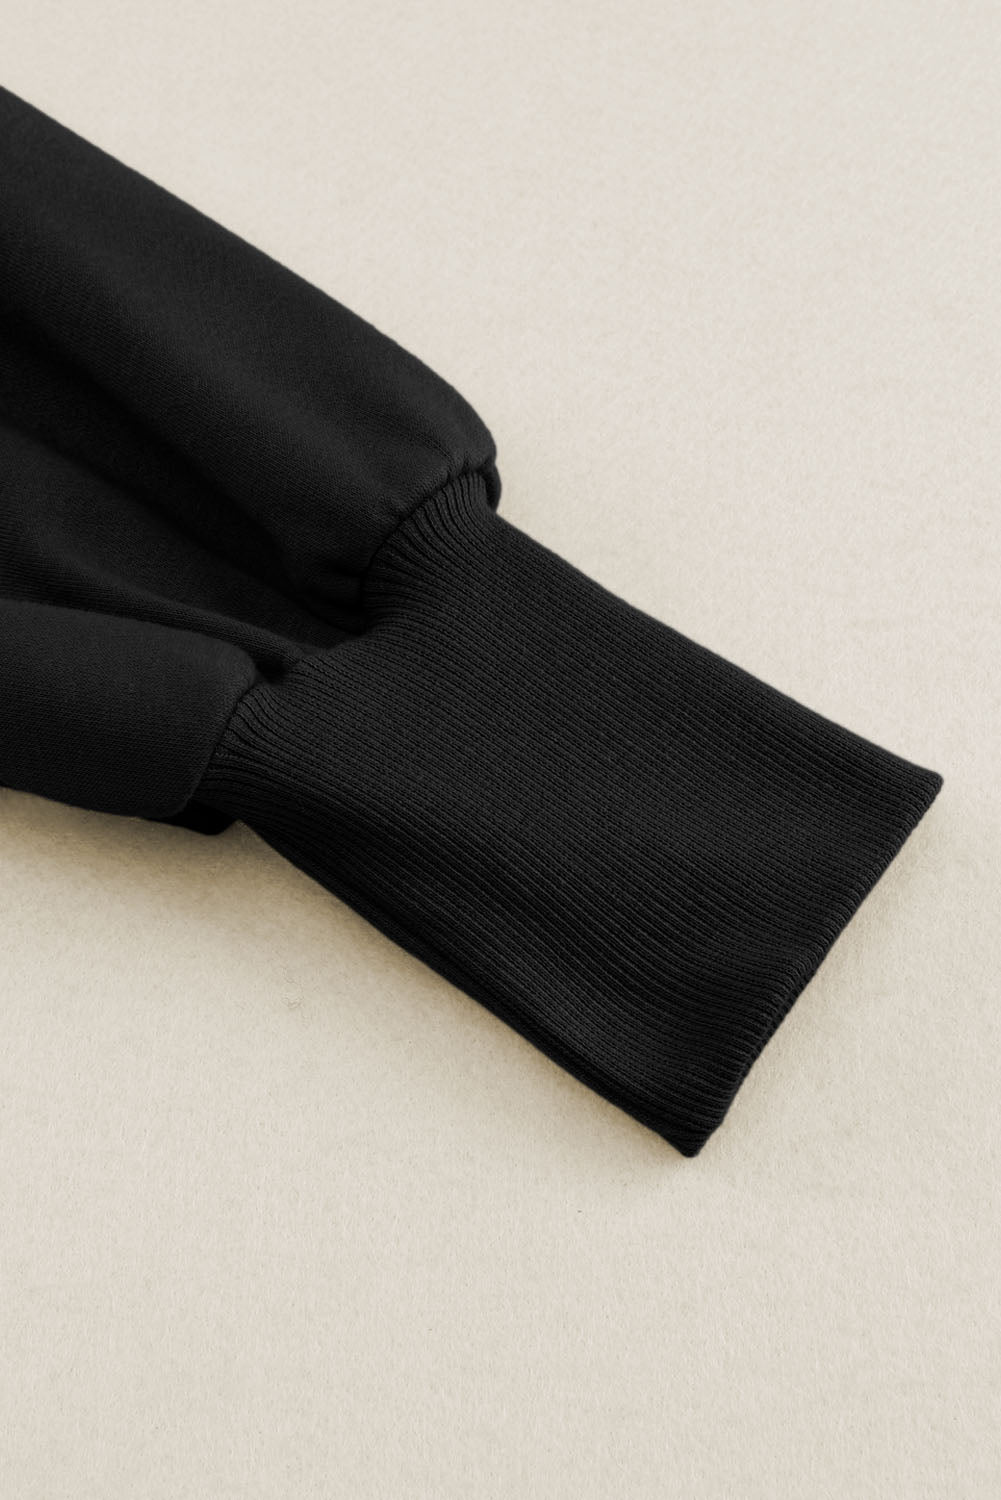 Crna majica s kapuljačom i otvorenim šavovima s neobrađenim rubovima